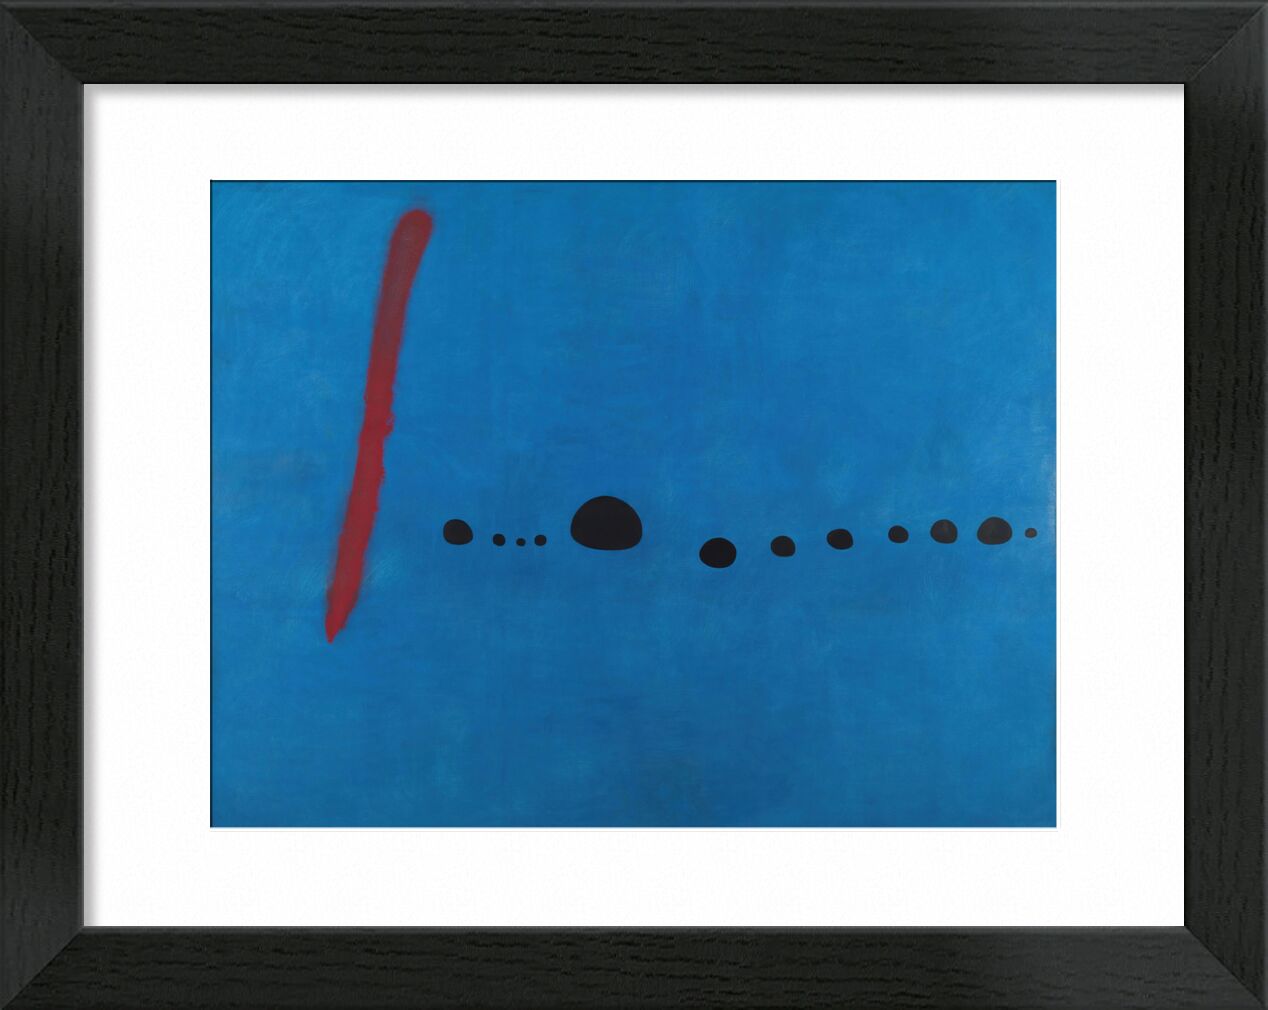 Blue II - Joan Miró von Bildende Kunst, Prodi Art, Joan Miró, blau, Zeichnung, abstrakt, Unendlichkeit, rot, Züge, Punkte, Malerei